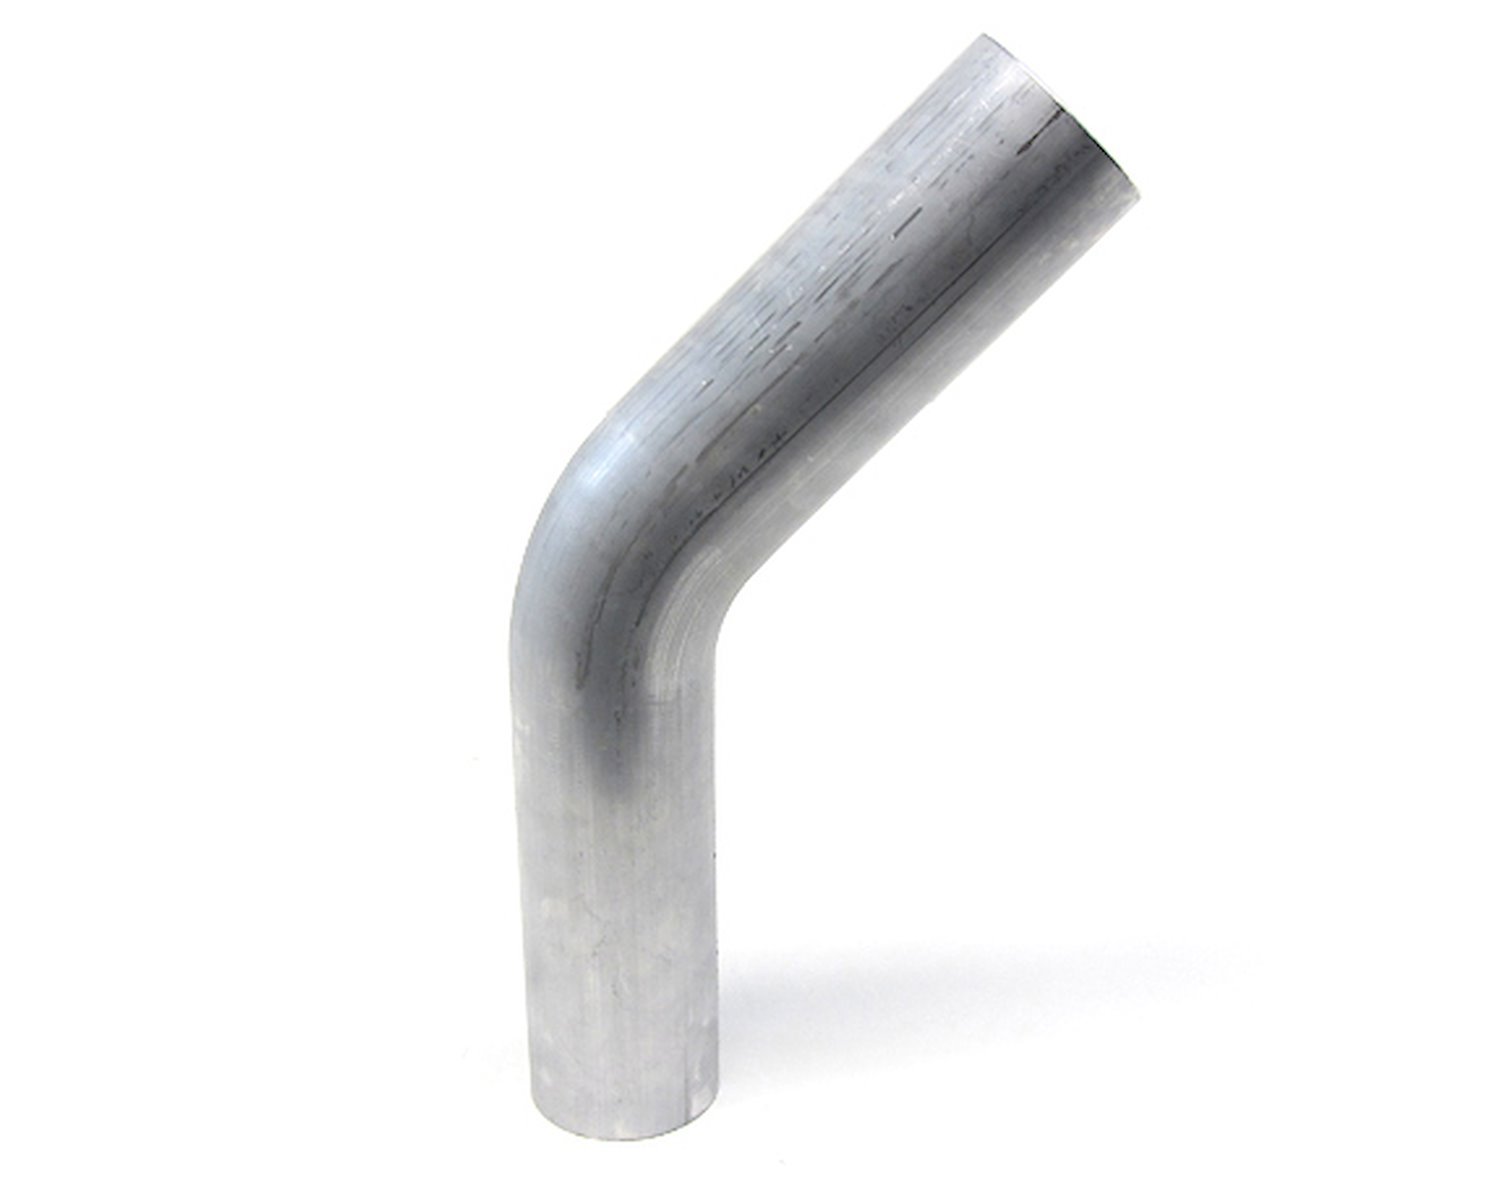 AT45-275-CLR-275 Aluminum Elbow Tube, 6061 Aluminum, 45-Degree Bend Elbow Tubing, 2-3/4 in. OD, Tight Radius, 2-3/4 in. CLR